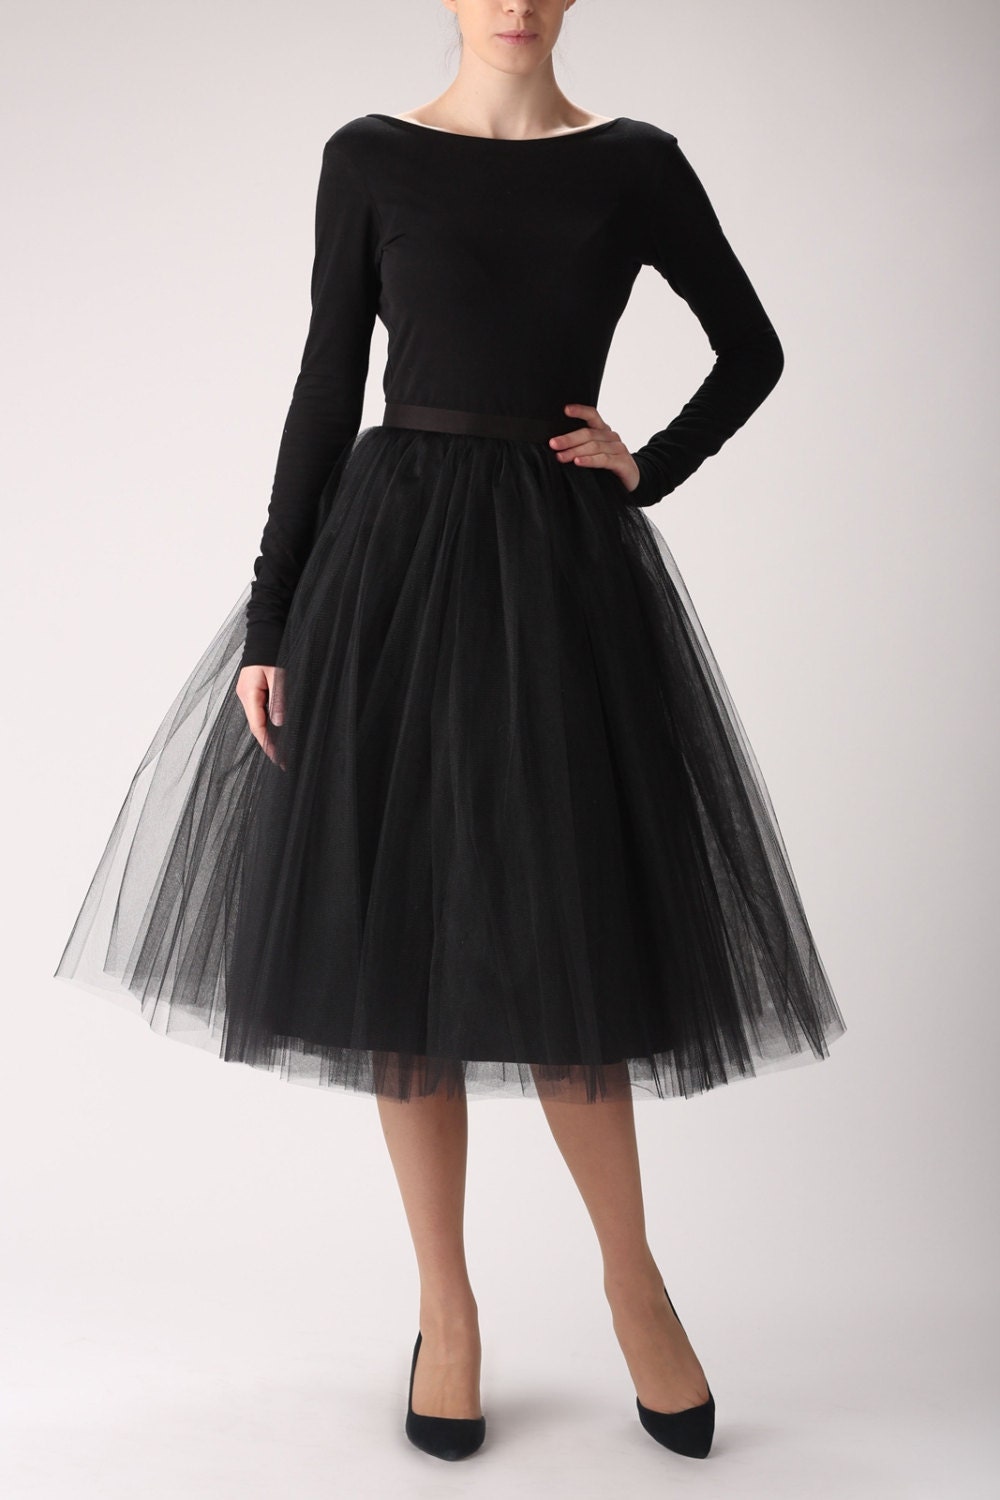 Black Tulle Skirt Handmade Long Skirt Handmade Tutu Skirt 4309